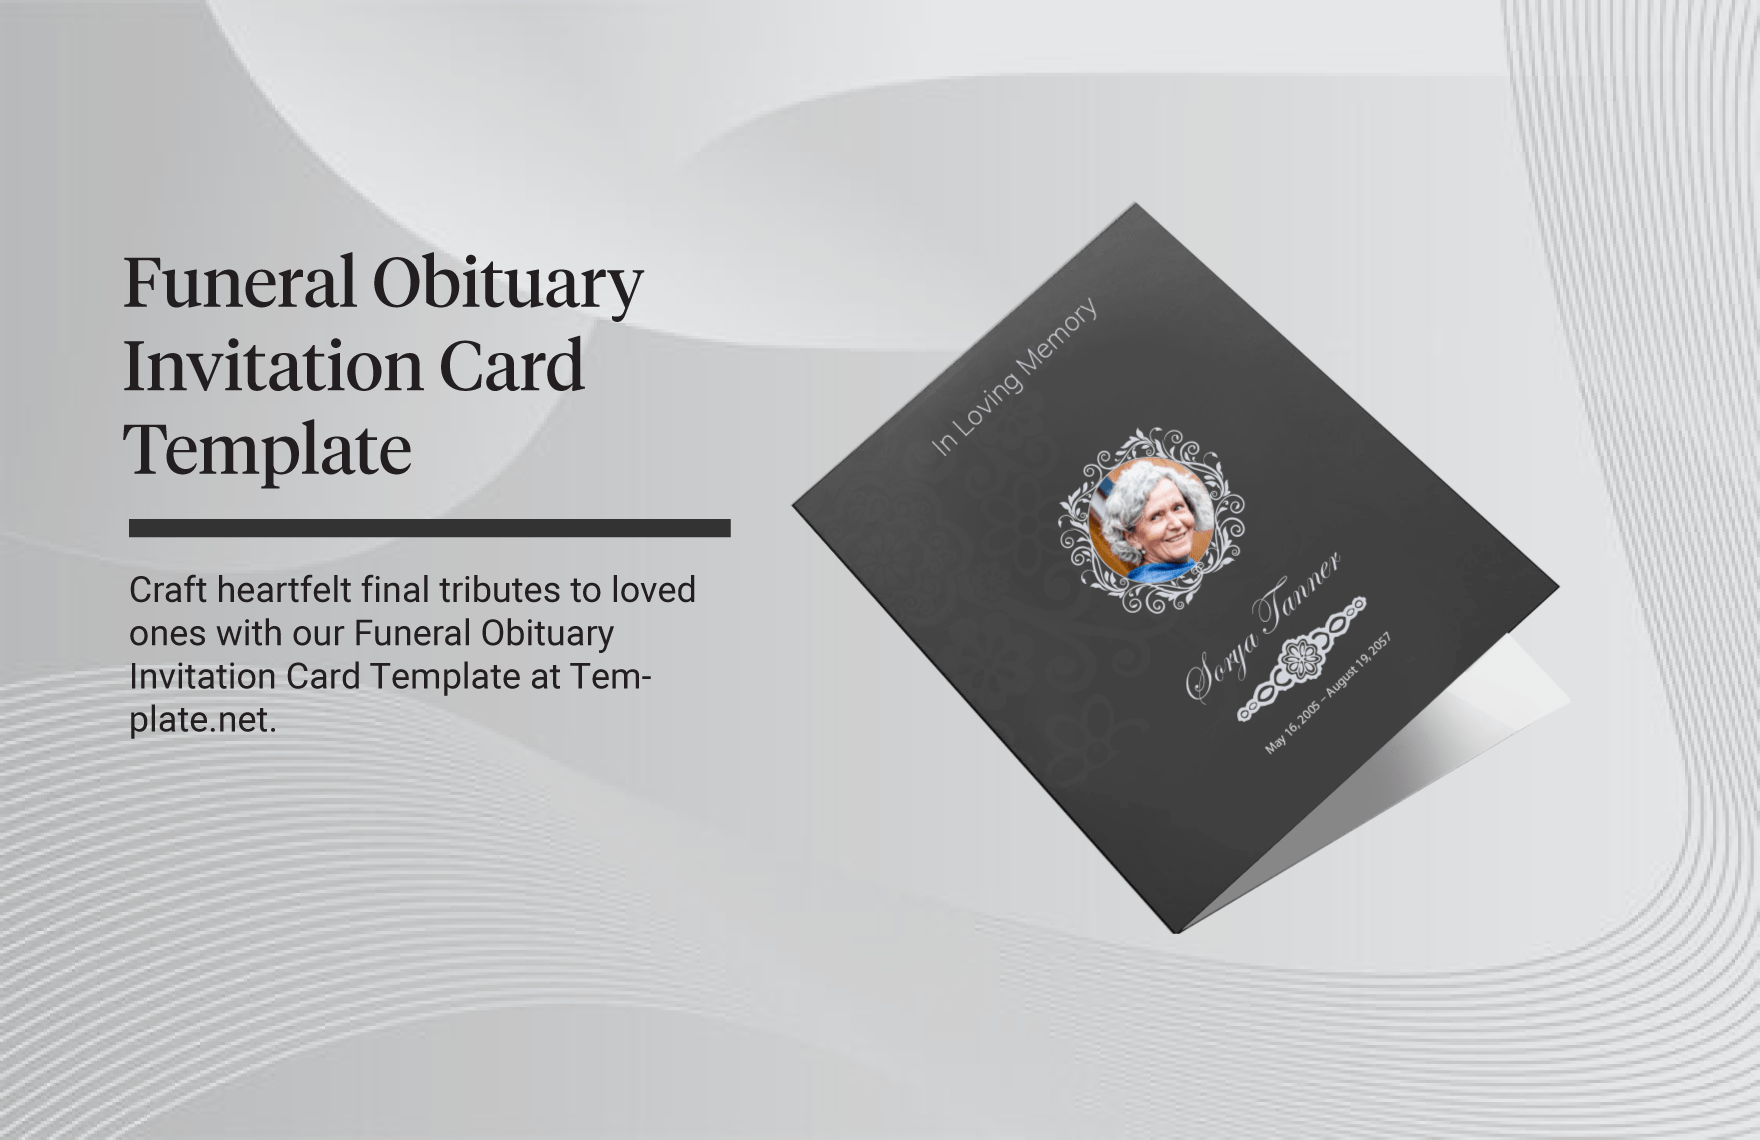 Funeral Obituary Invitation Card Template